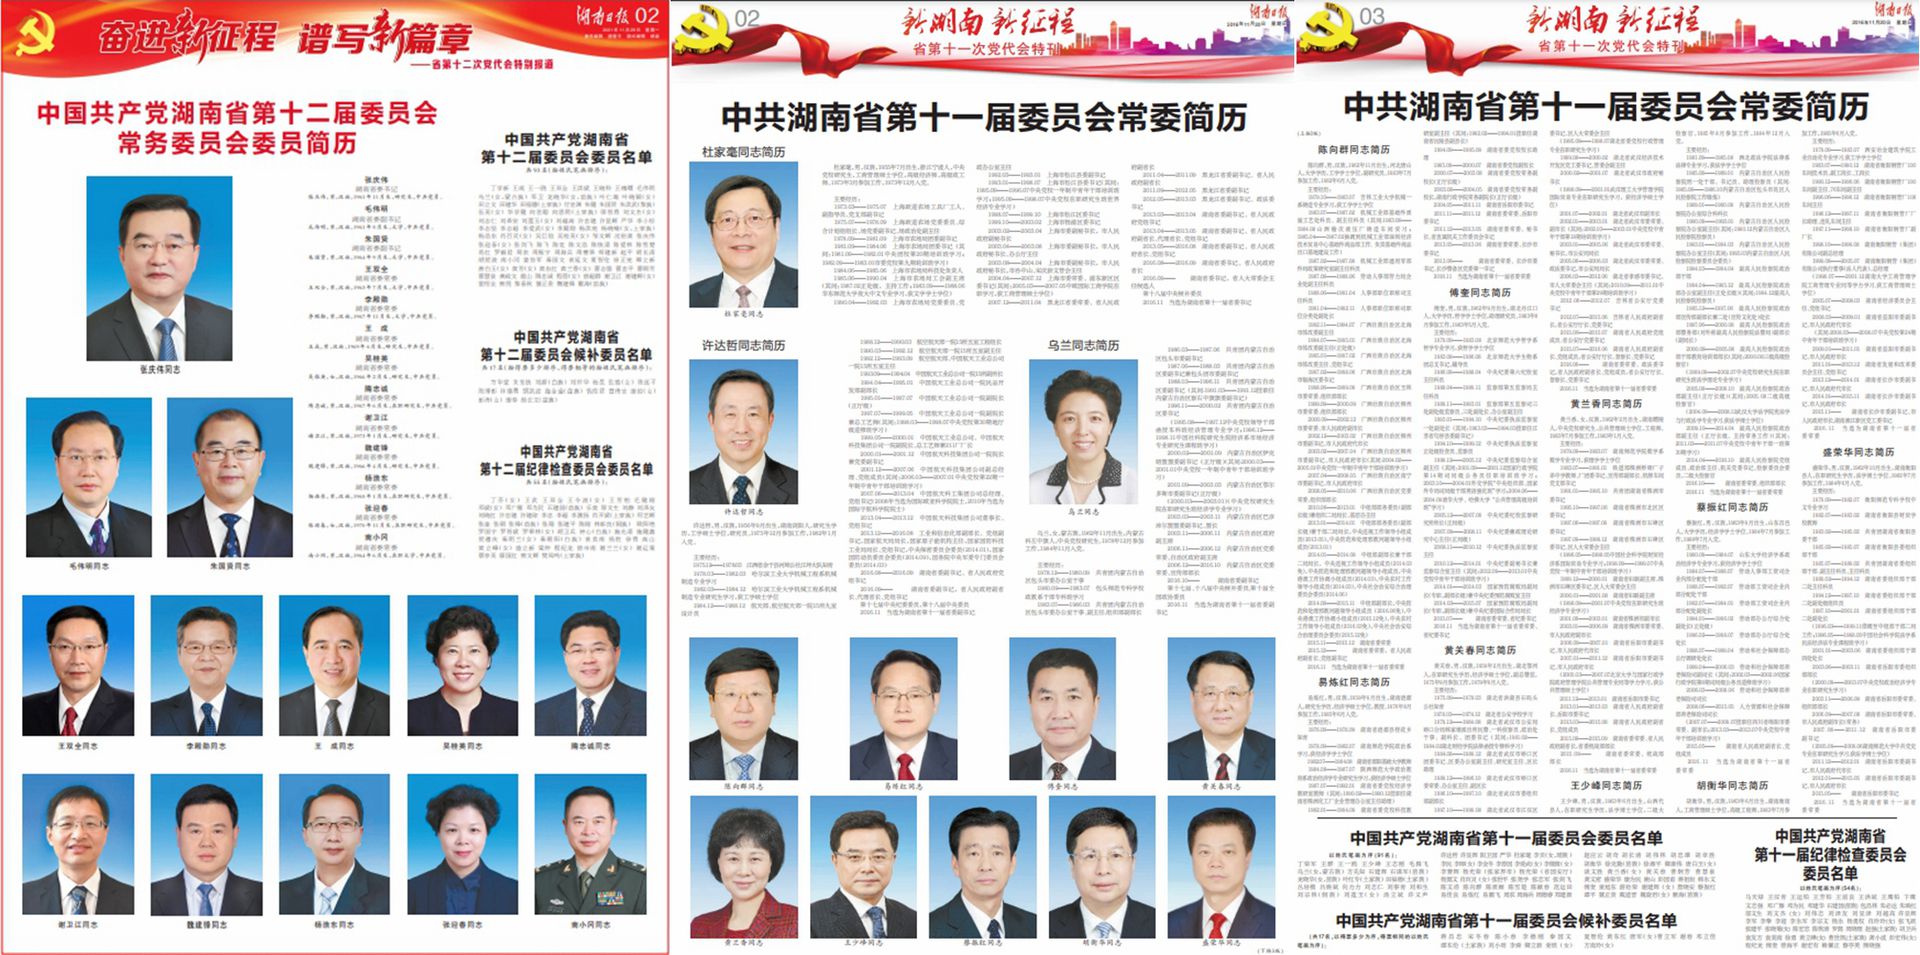 《湖南日报》2021年和2016年两次刊登湖南省委常委简历对比：左为2021年，中和右为2016年。（湖南日报截图拼图）